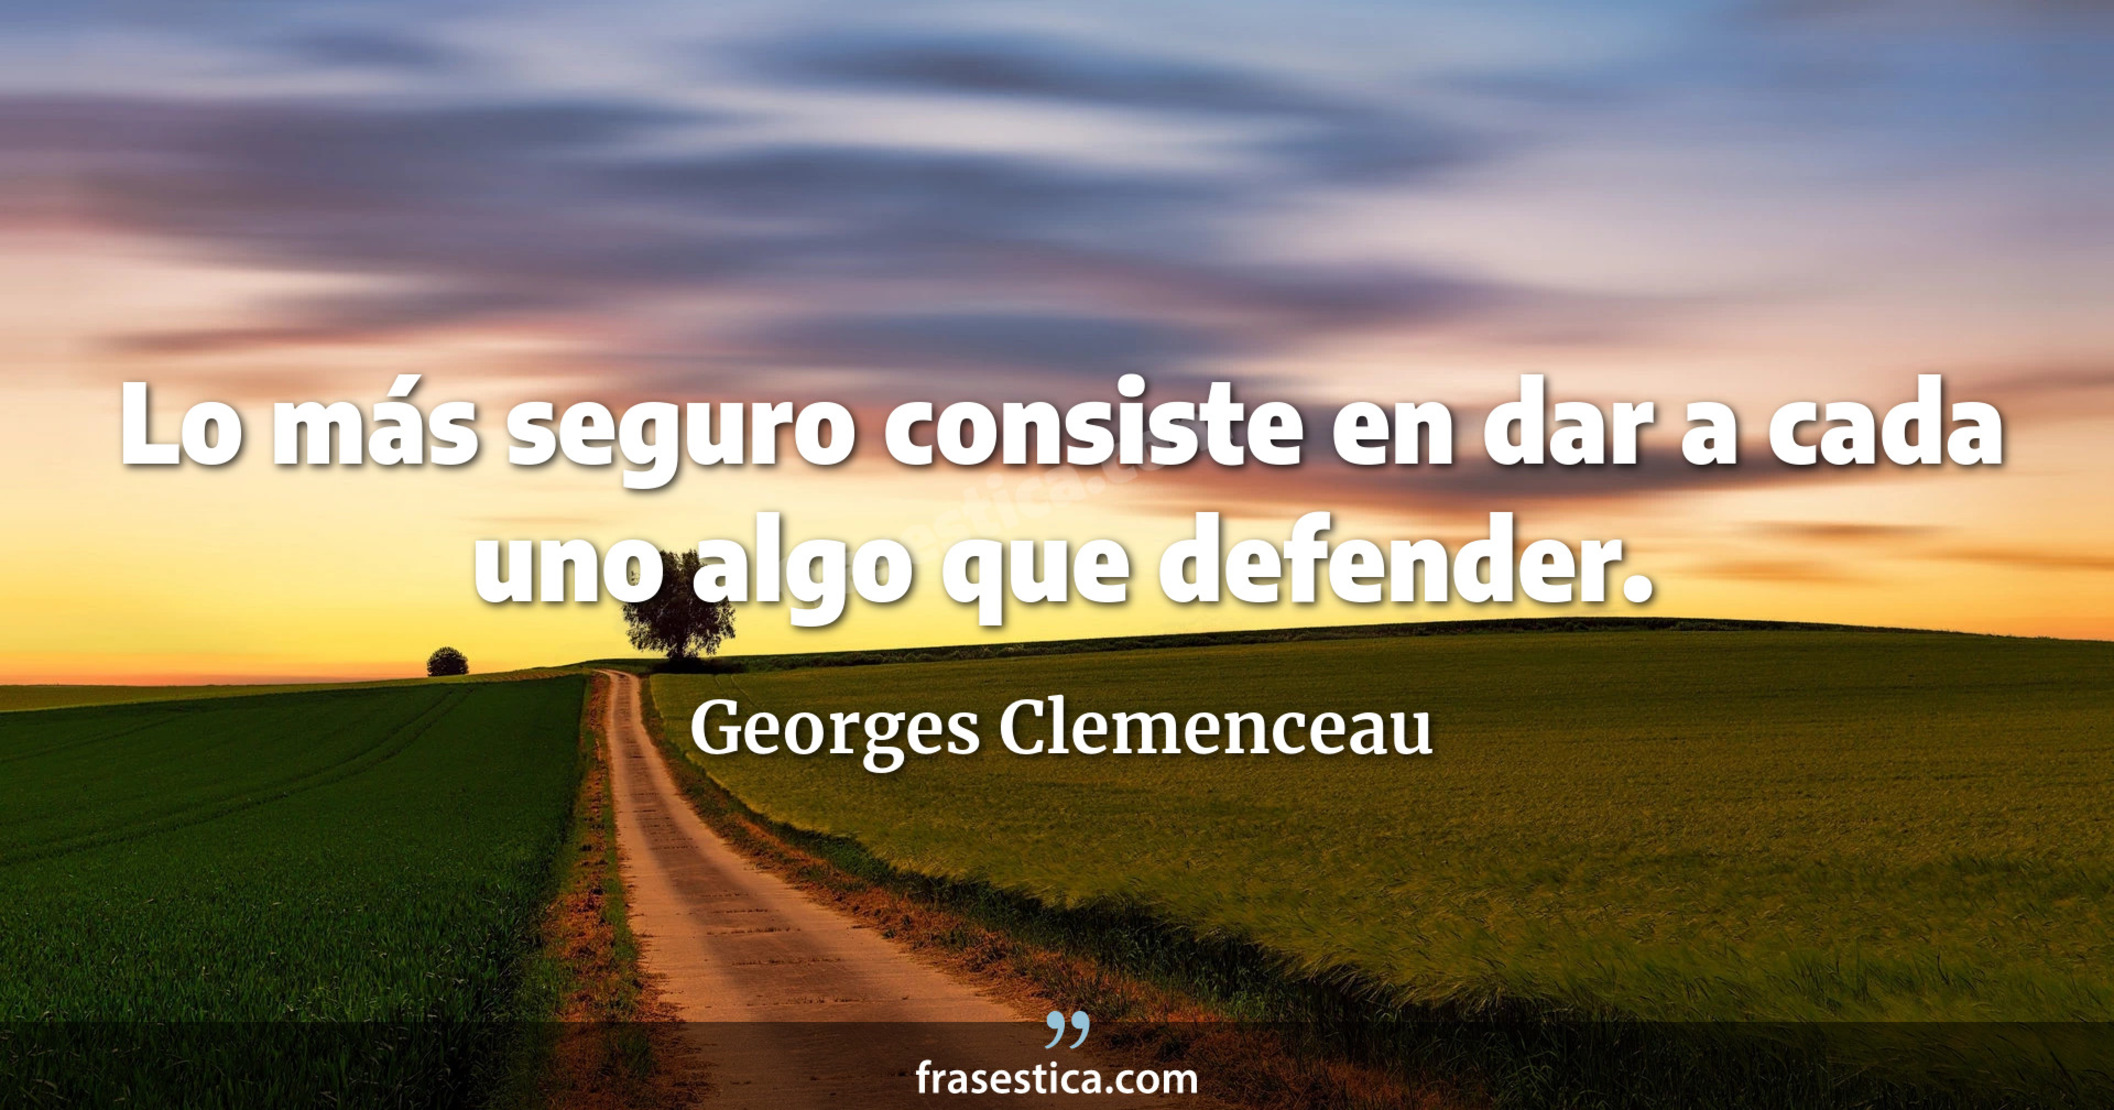 Lo más seguro consiste en dar a cada uno algo que defender. - Georges Clemenceau